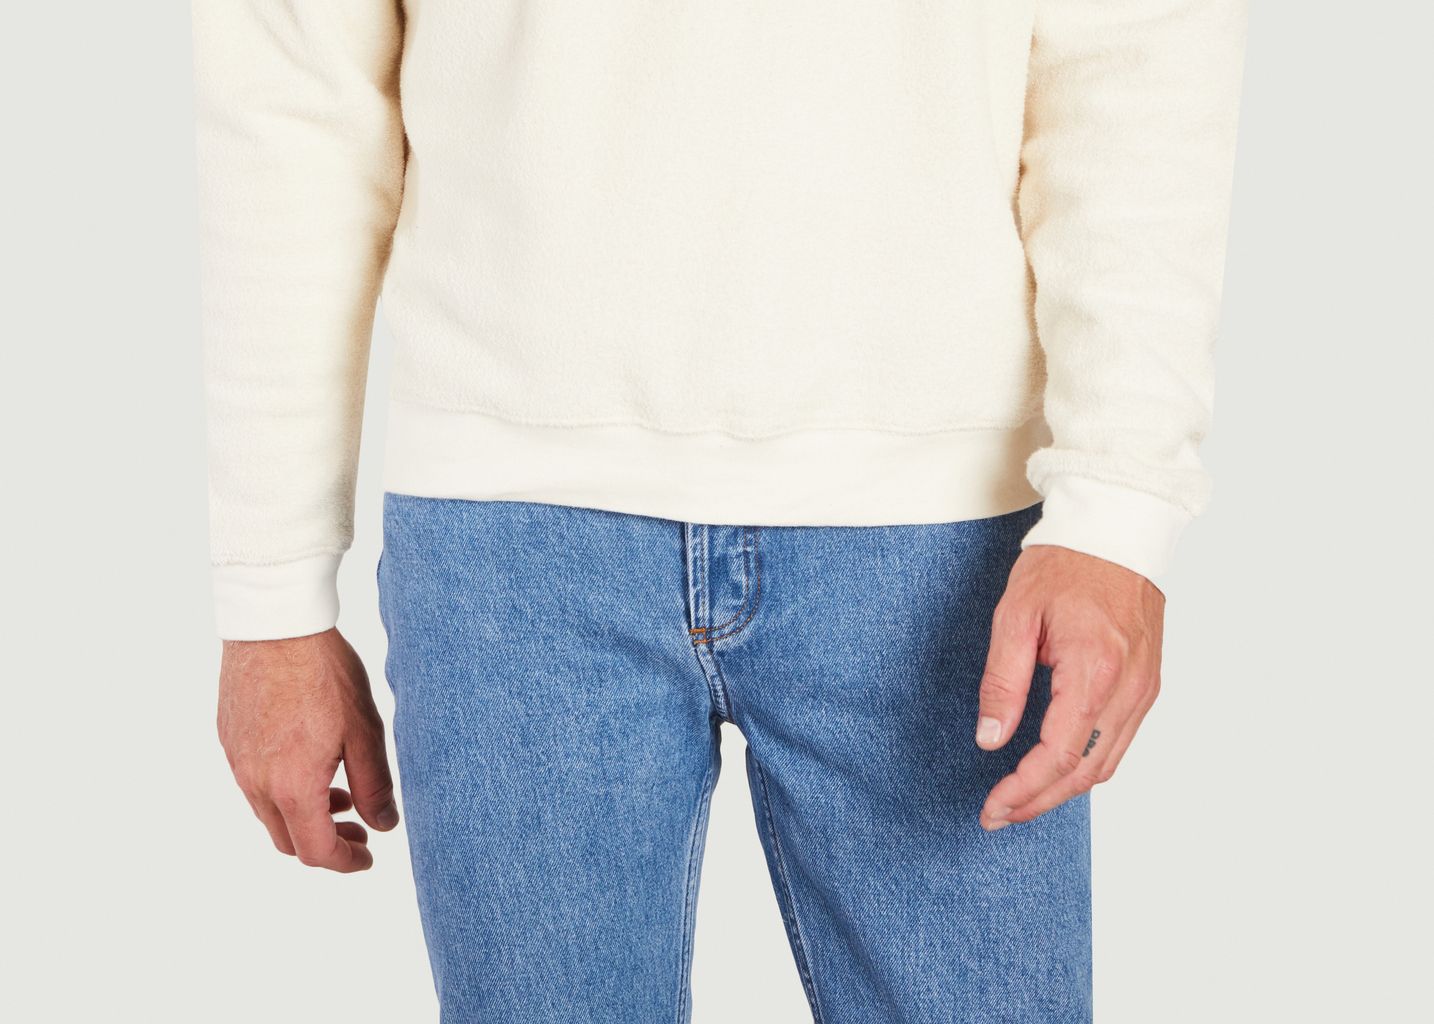 Bobypark-Sweatshirt aus Bio-Baumwolle - American Vintage